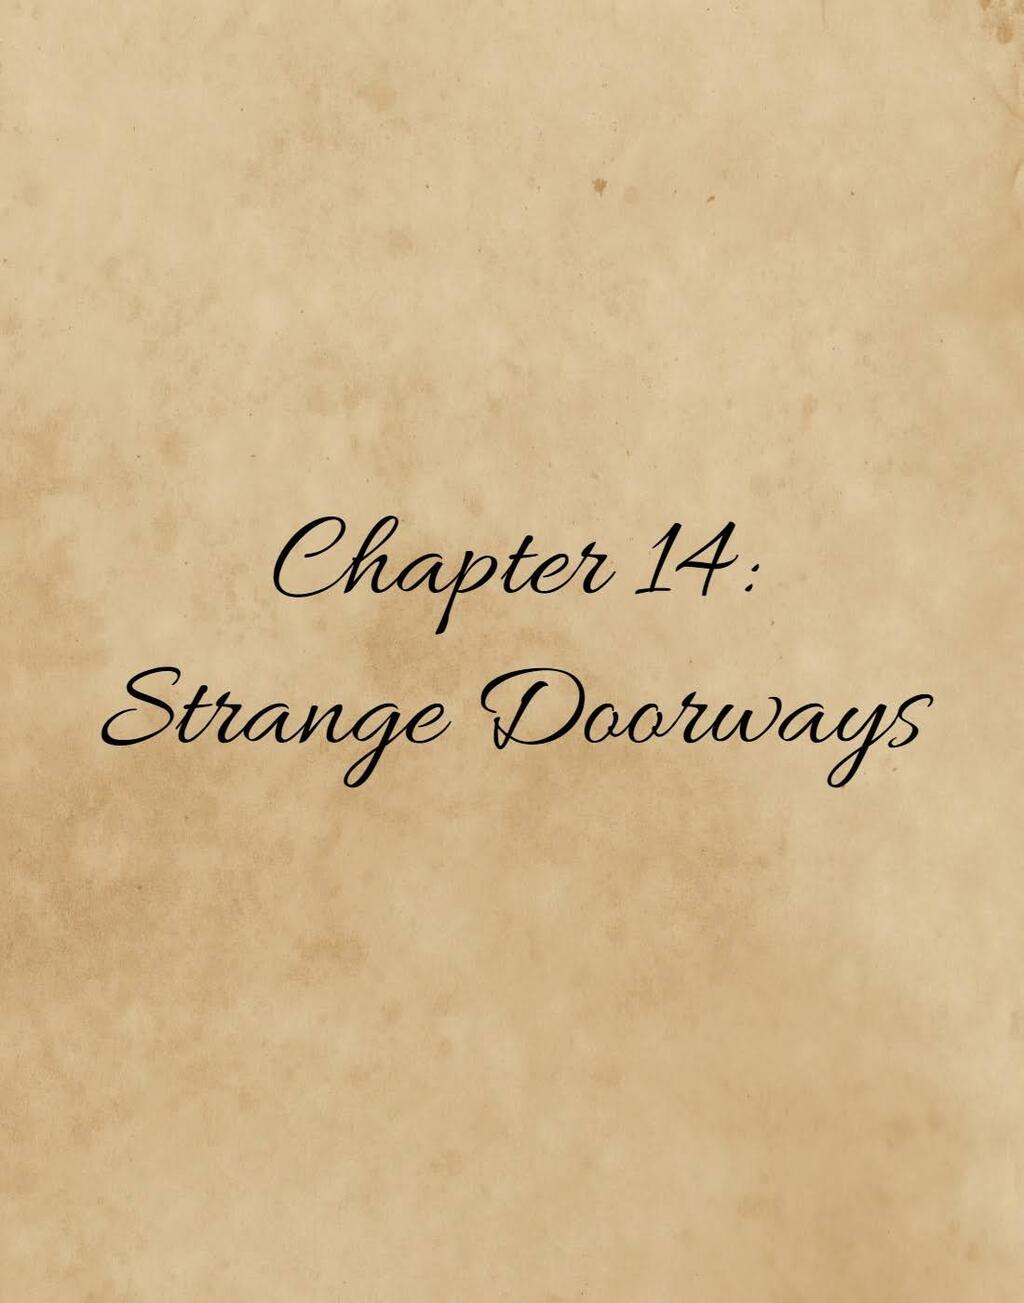 Most recent image: Chapter 14: Strange Doorways